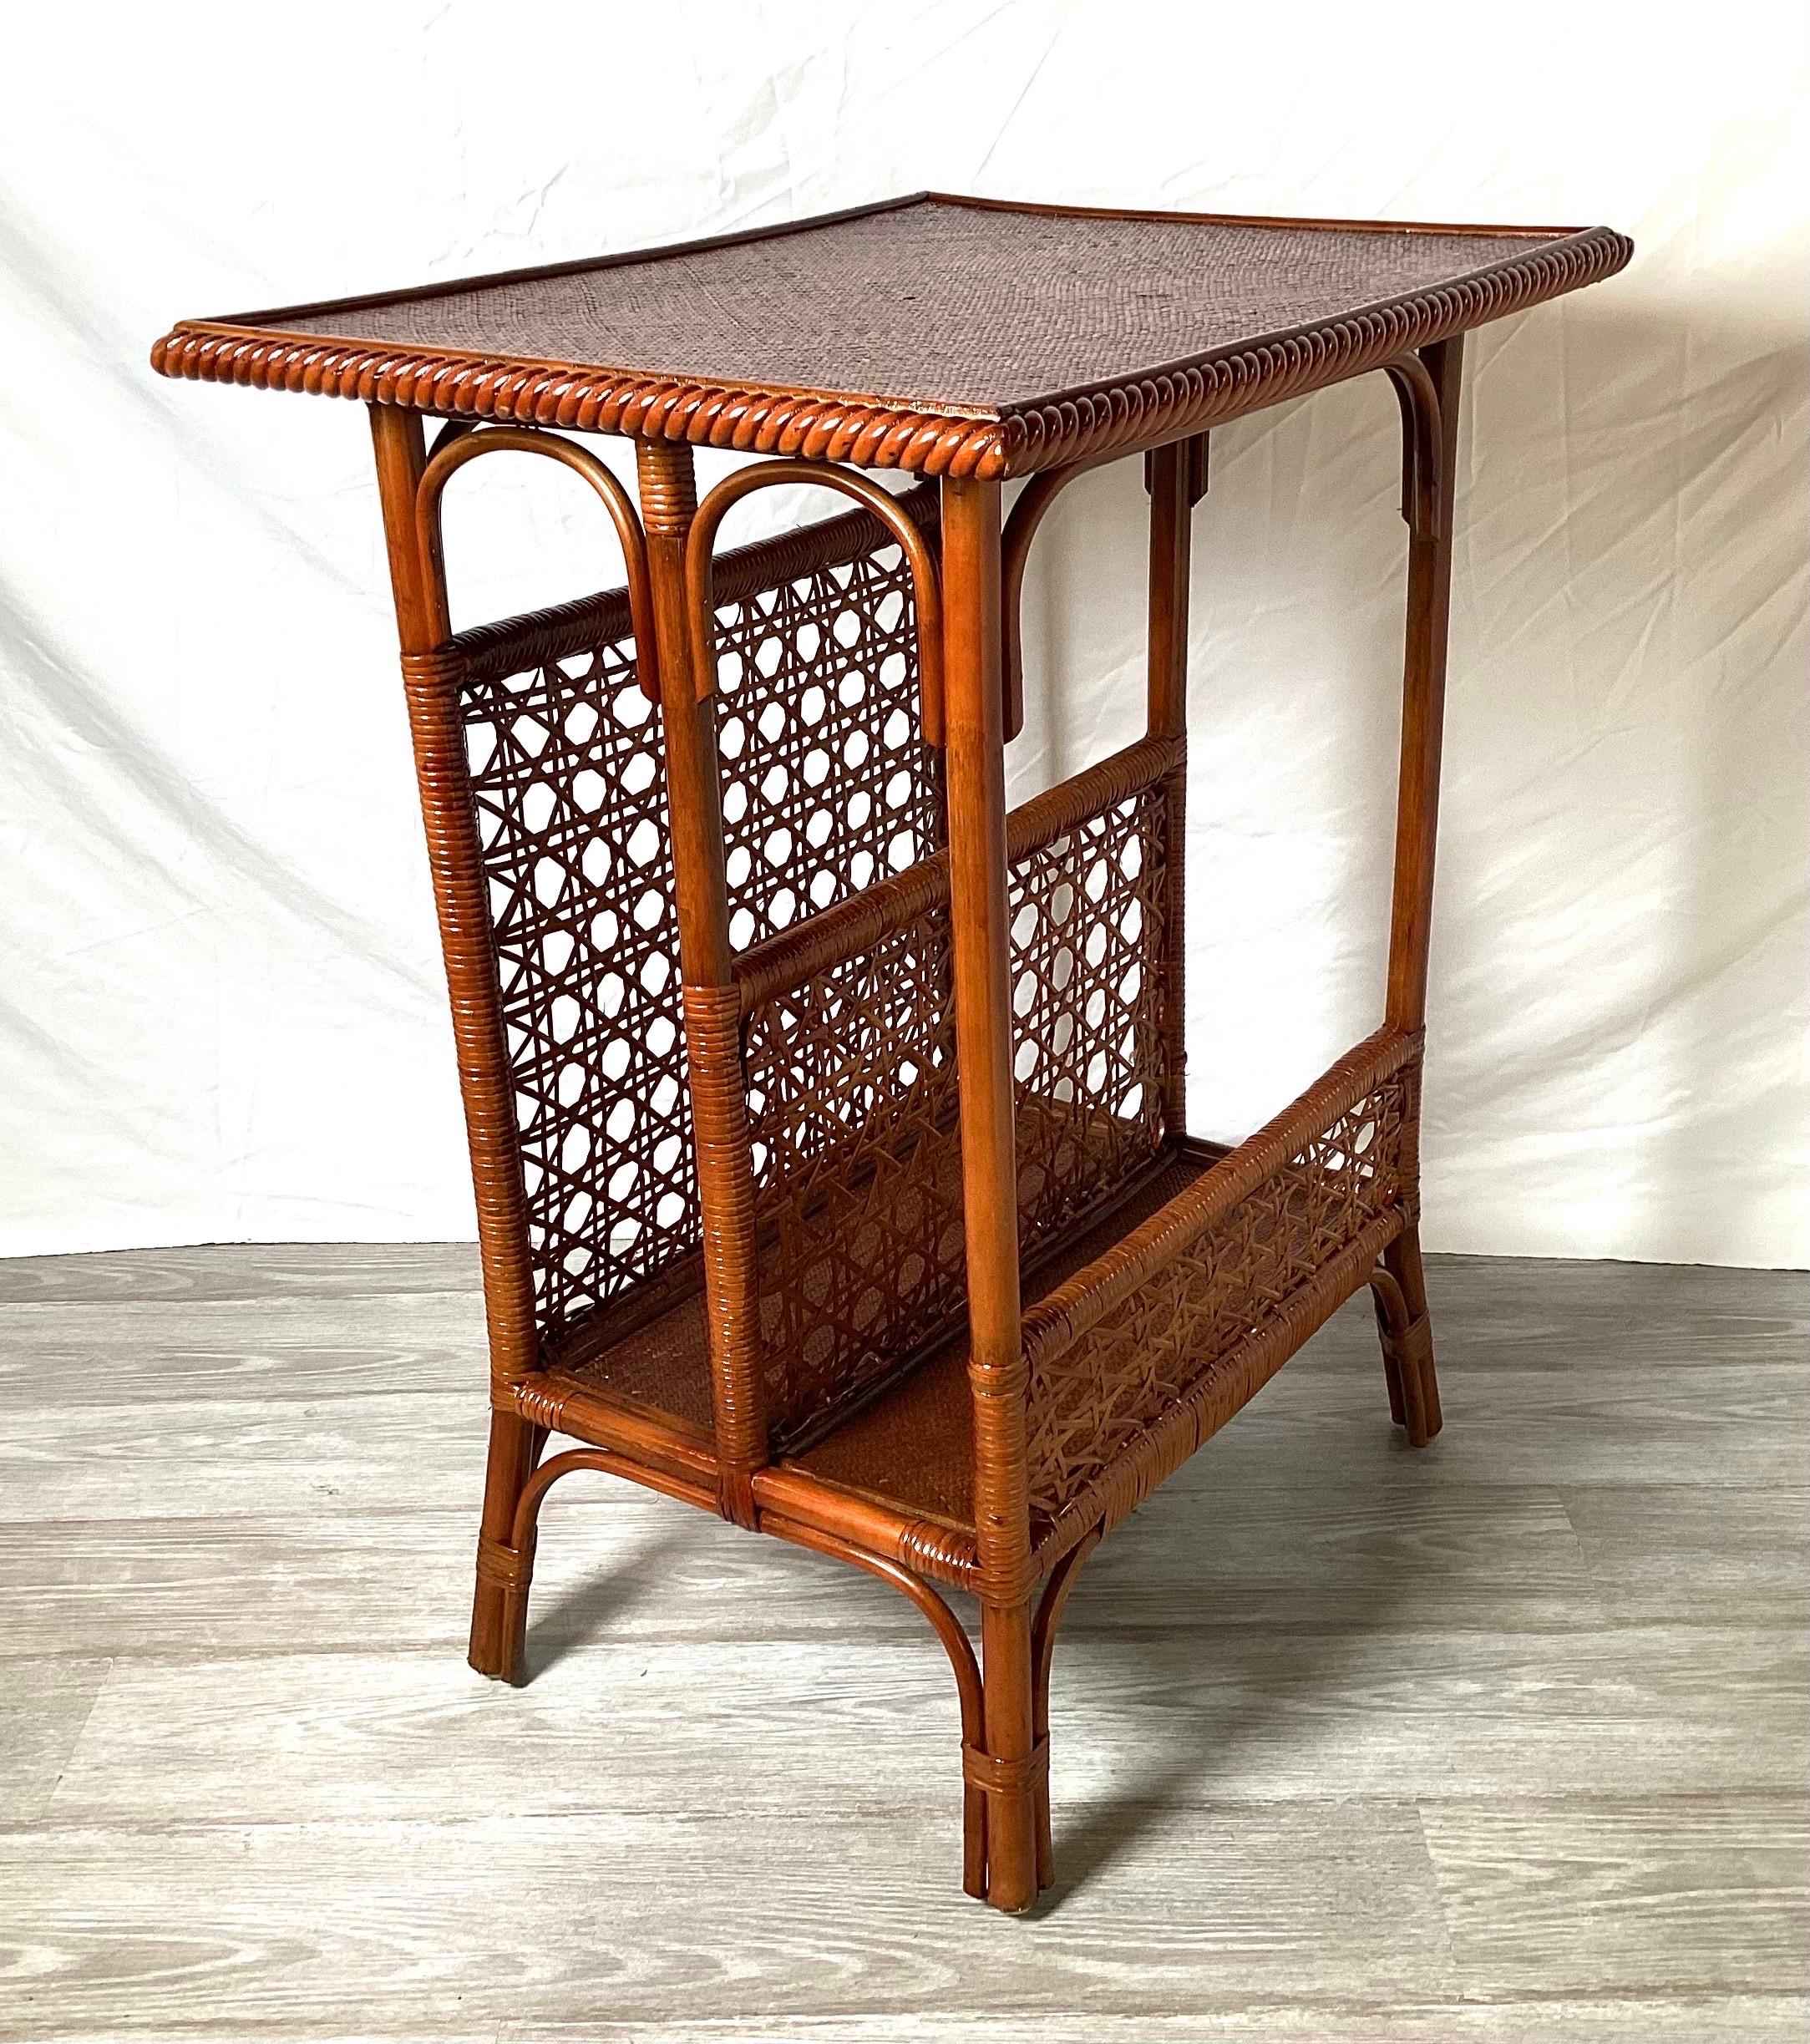 Une table d'appoint en bambou du début du 20e siècle pour le rangement et la lecture. Le plateau rectangulaire avec compartiments latéraux, les côtés cannelés reposant sur quatre pieds en bambou. Le dessus est en bois recouvert de bandes de bambou